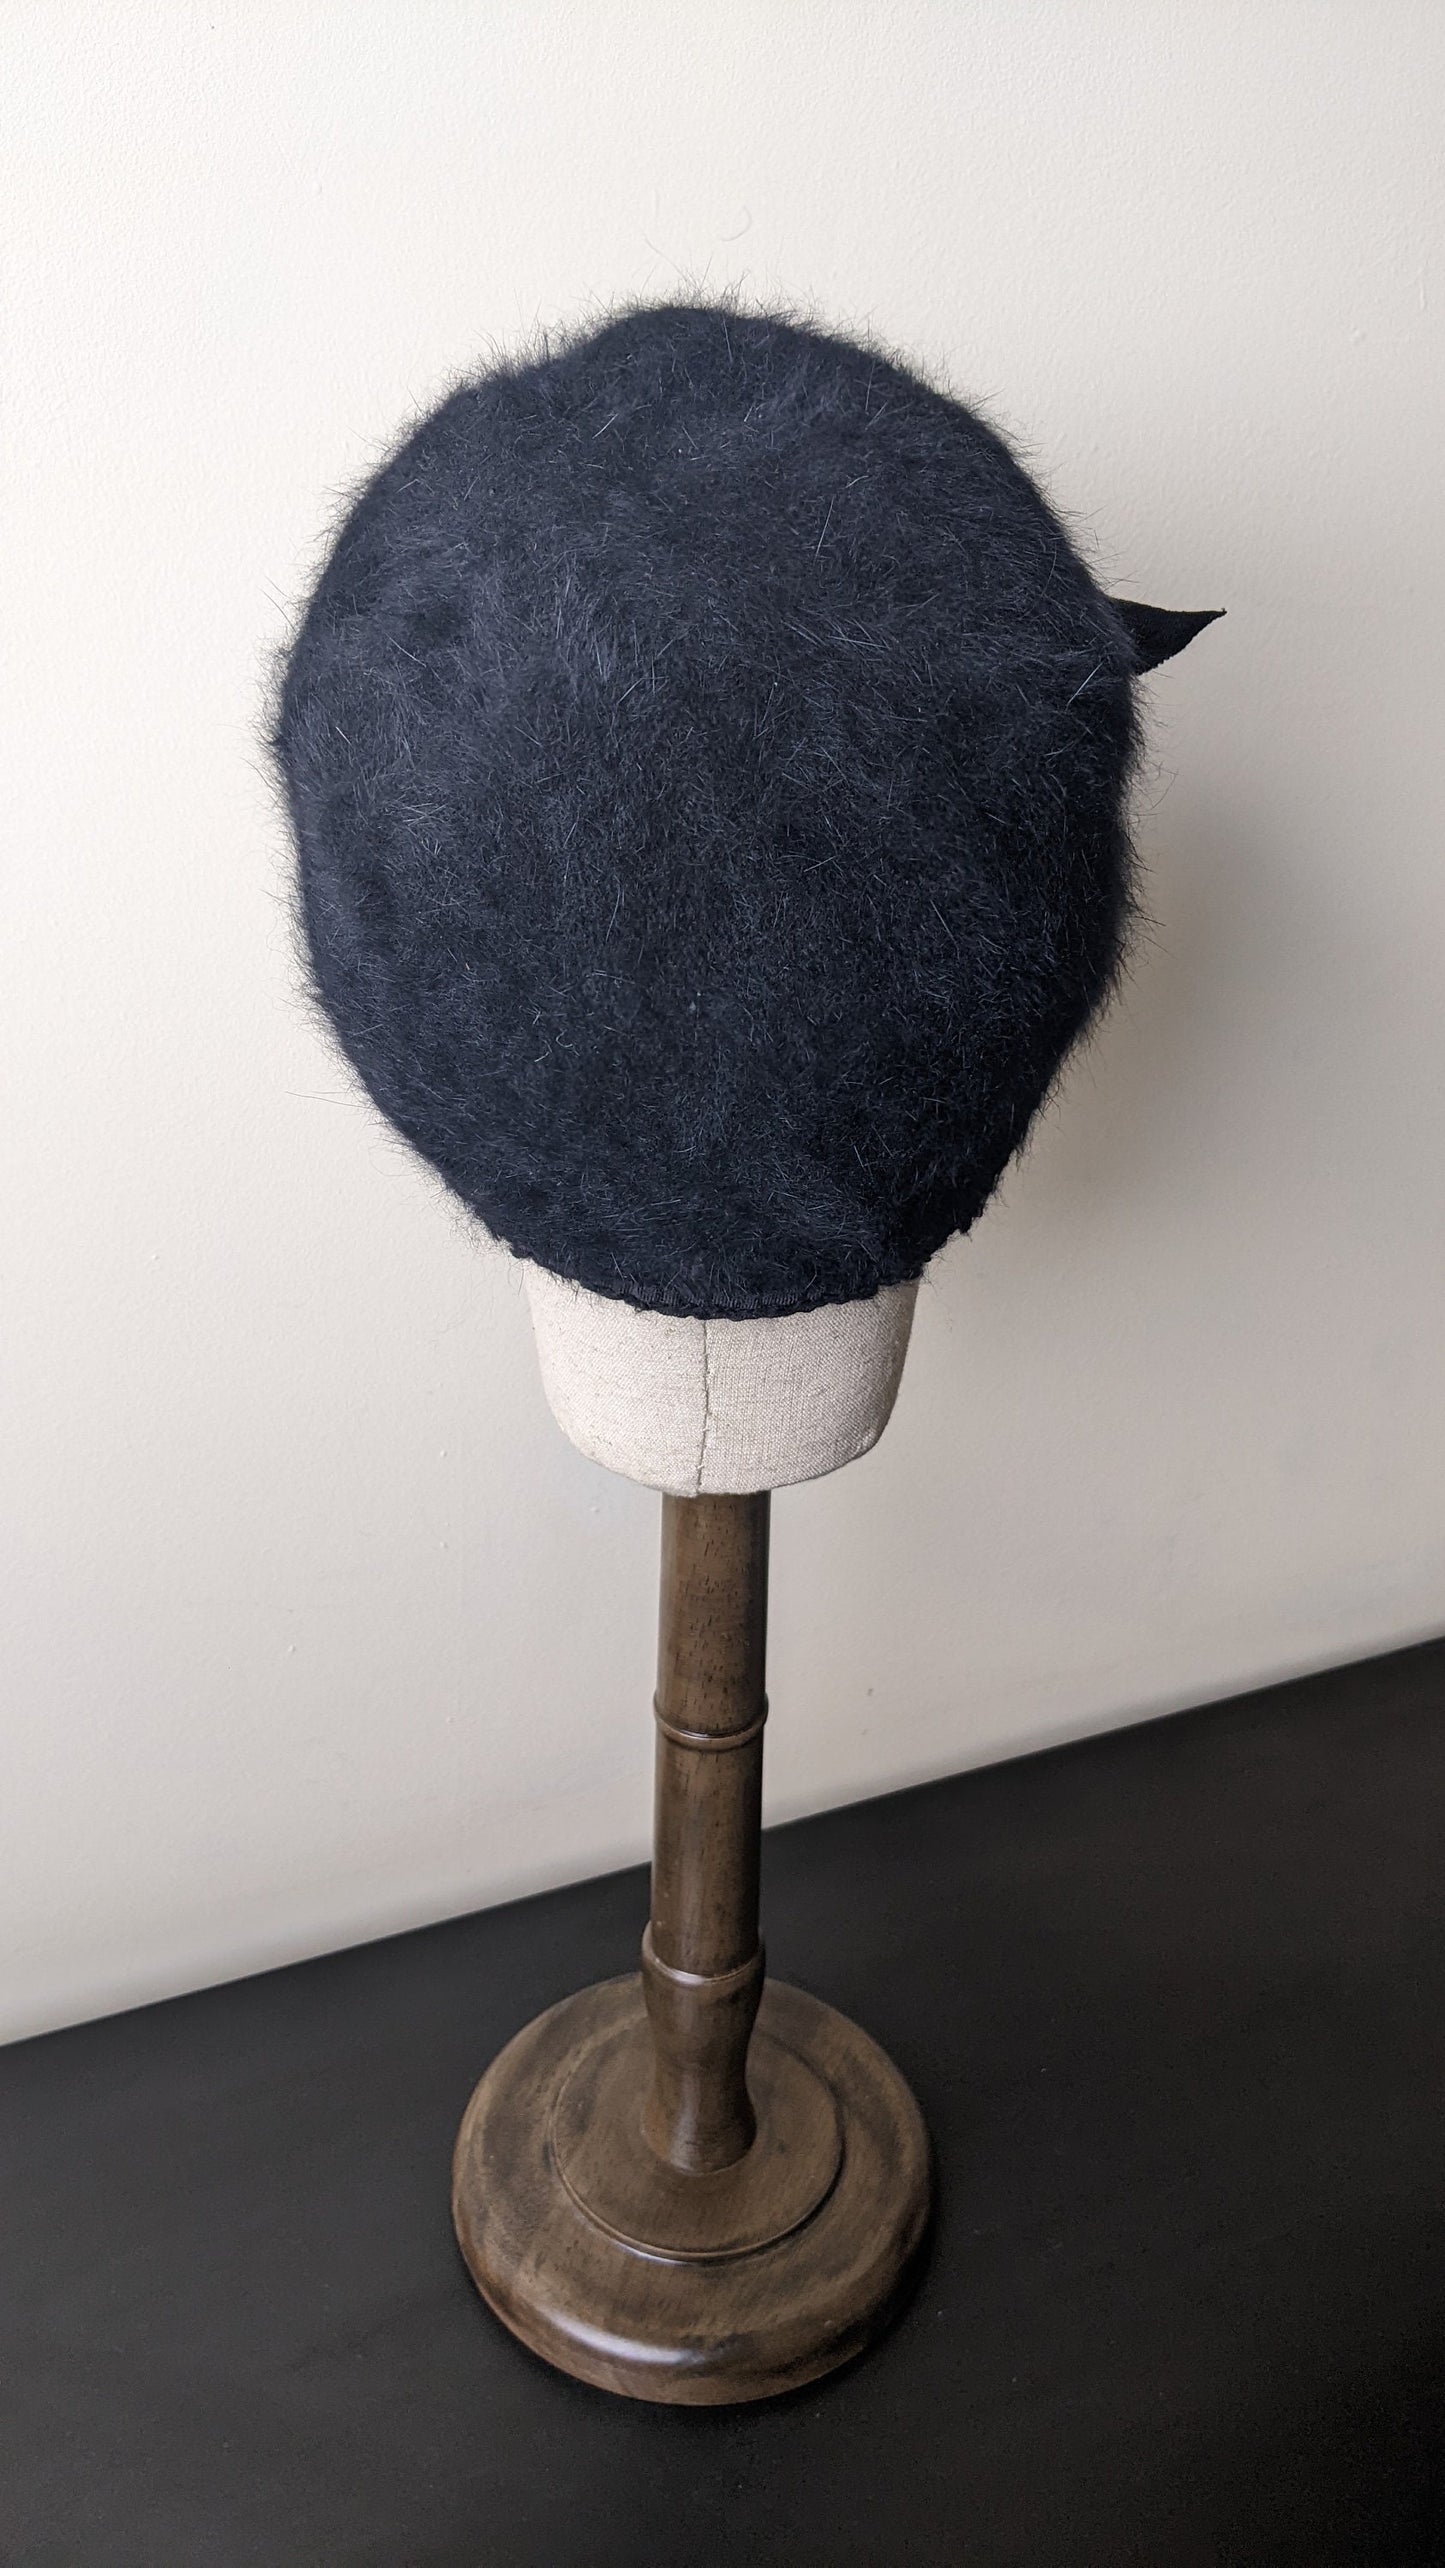 90s Angora Fur Cloche Hat by Loevenich, Fluffy Winter Headwear, Size Small